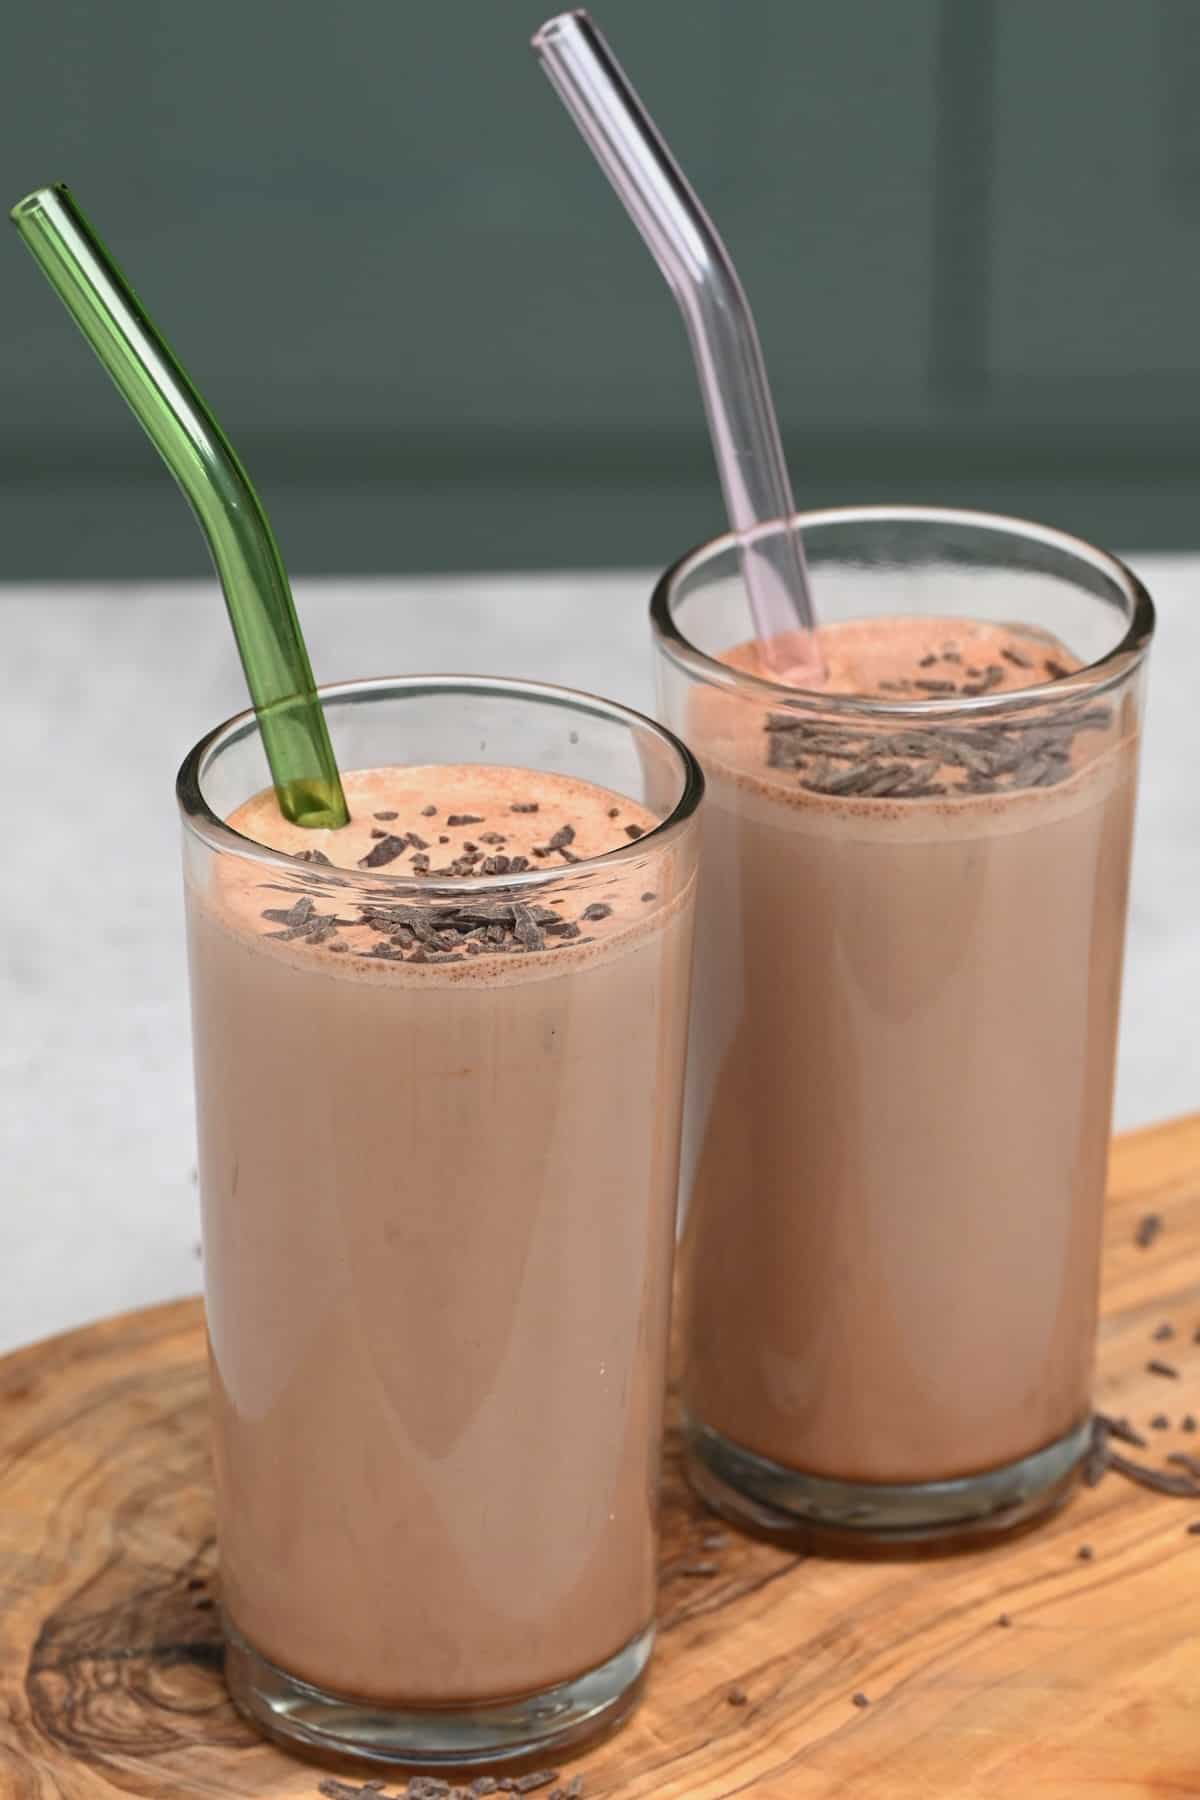 Hershey's Chocolate Drink Maker : Chocolate Milk 